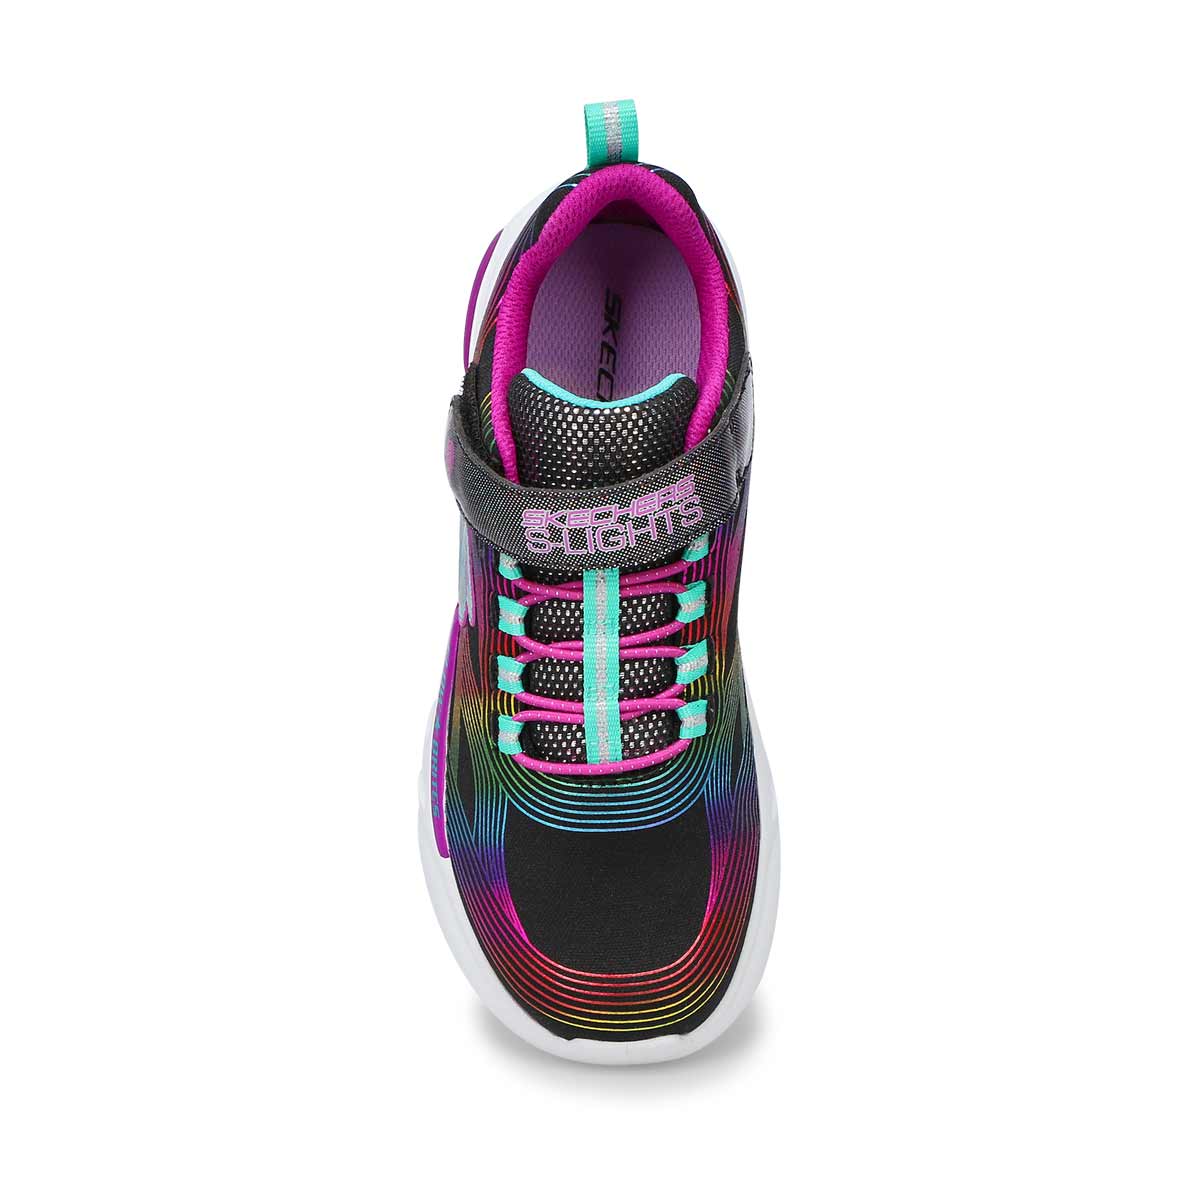 Skechers Girls' Glow Brites Runners - Black/M | SoftMoc.com